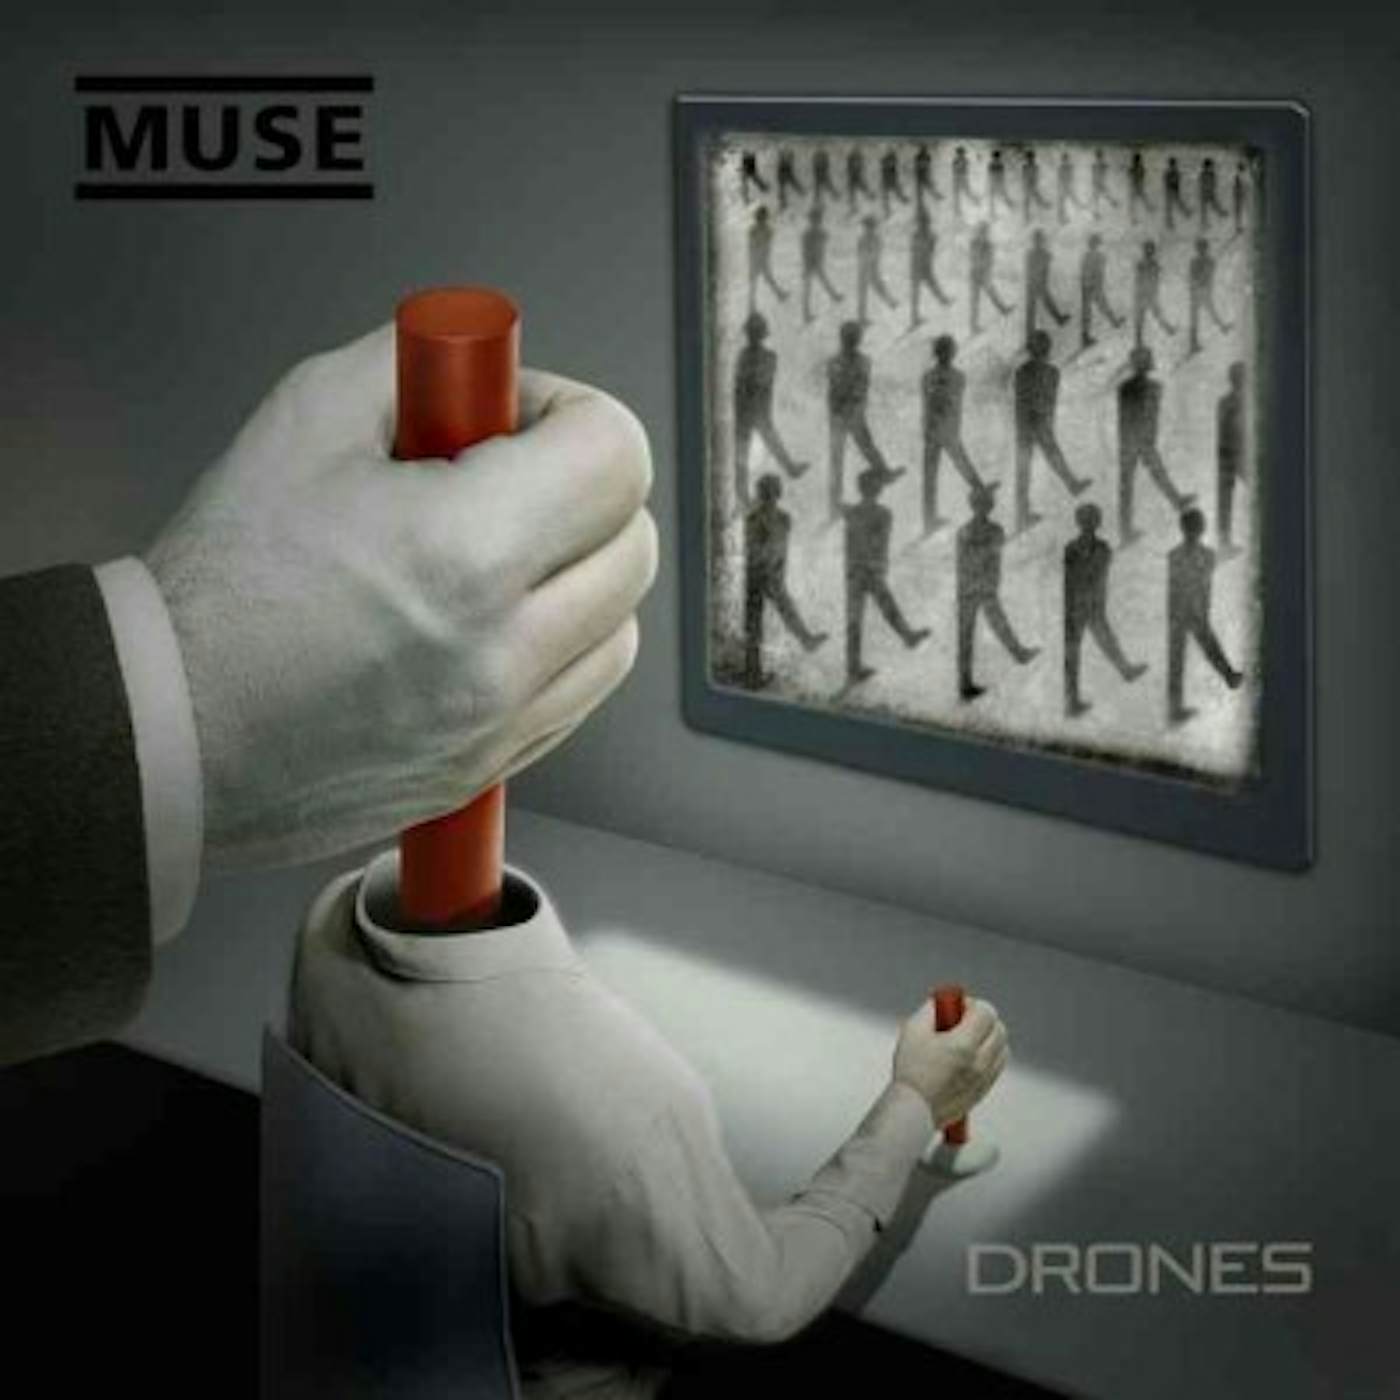 Muse Drones vinyl record